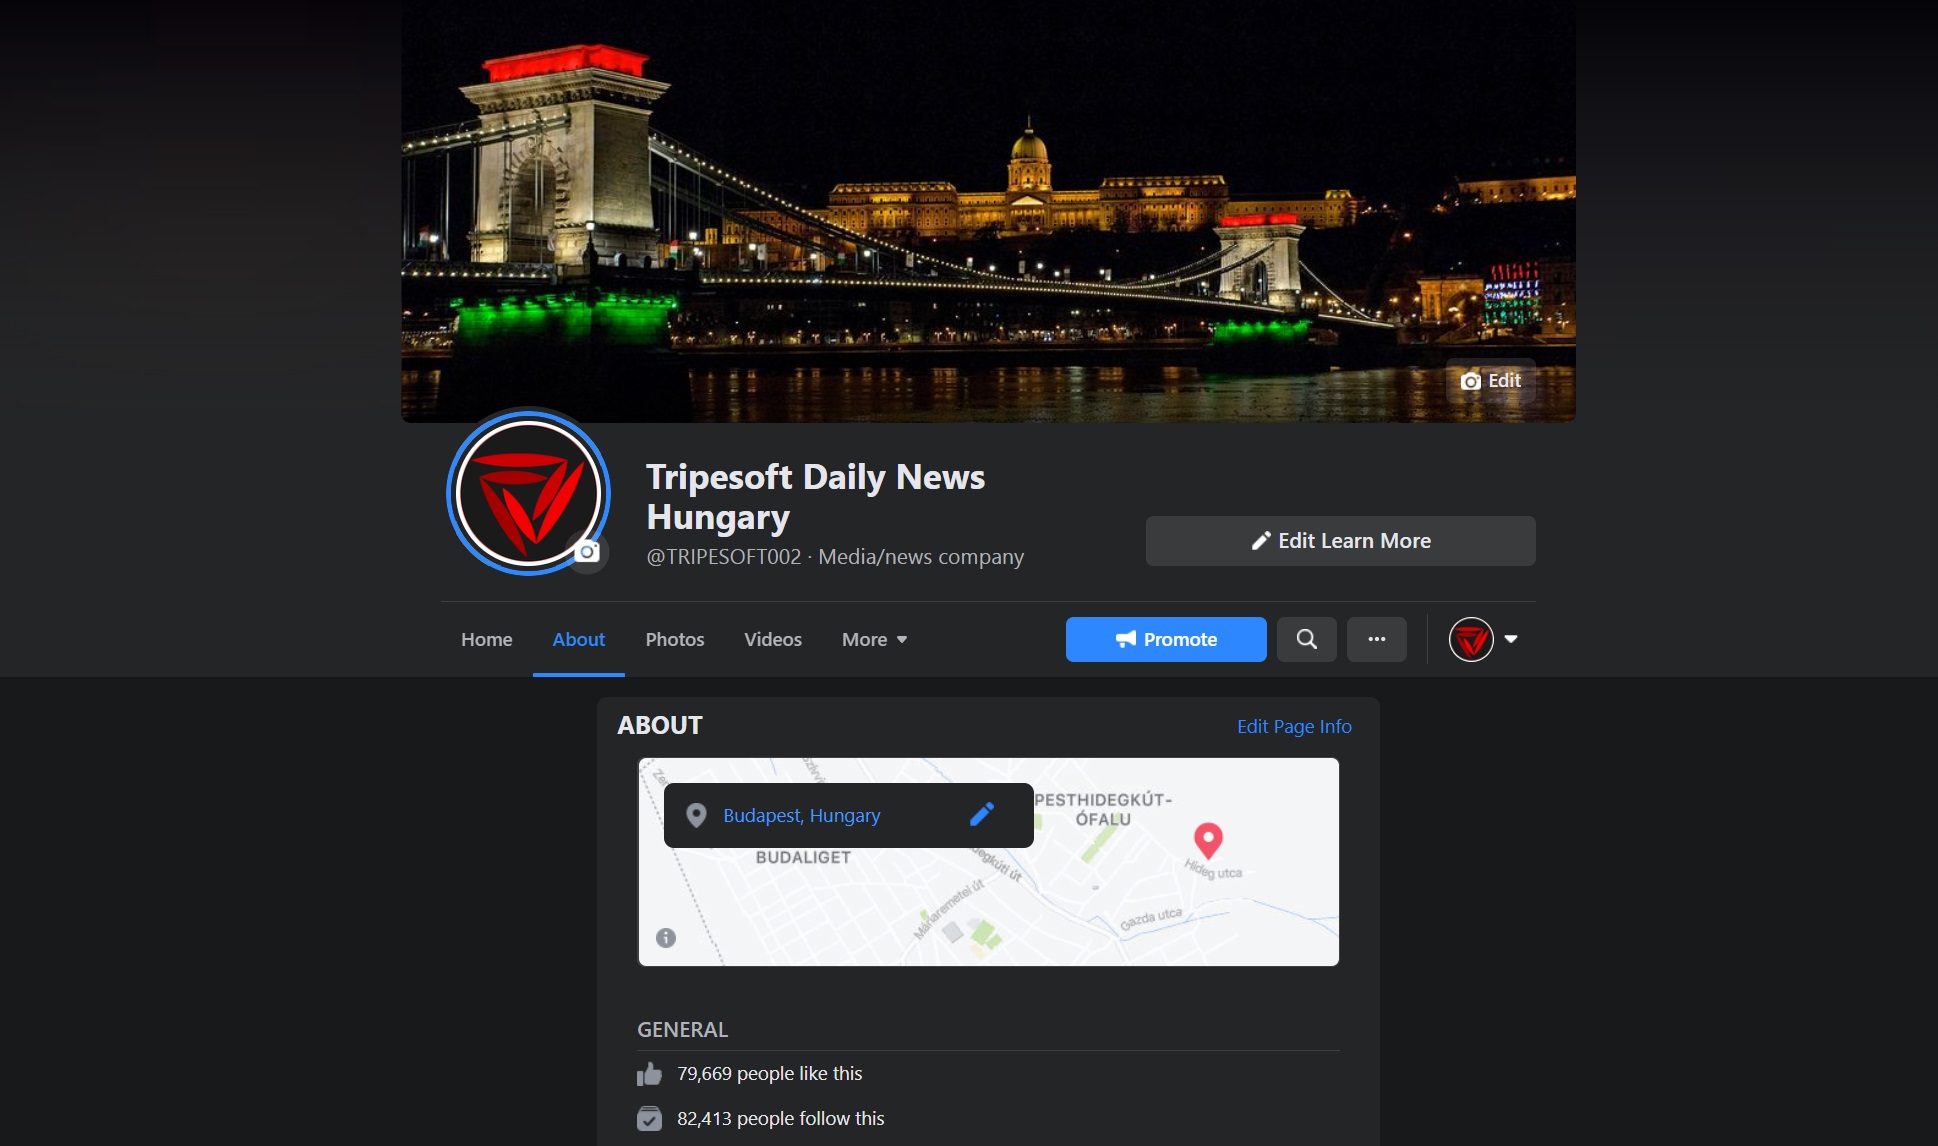 匈牙利每日新聞 facebook 頁面被盜